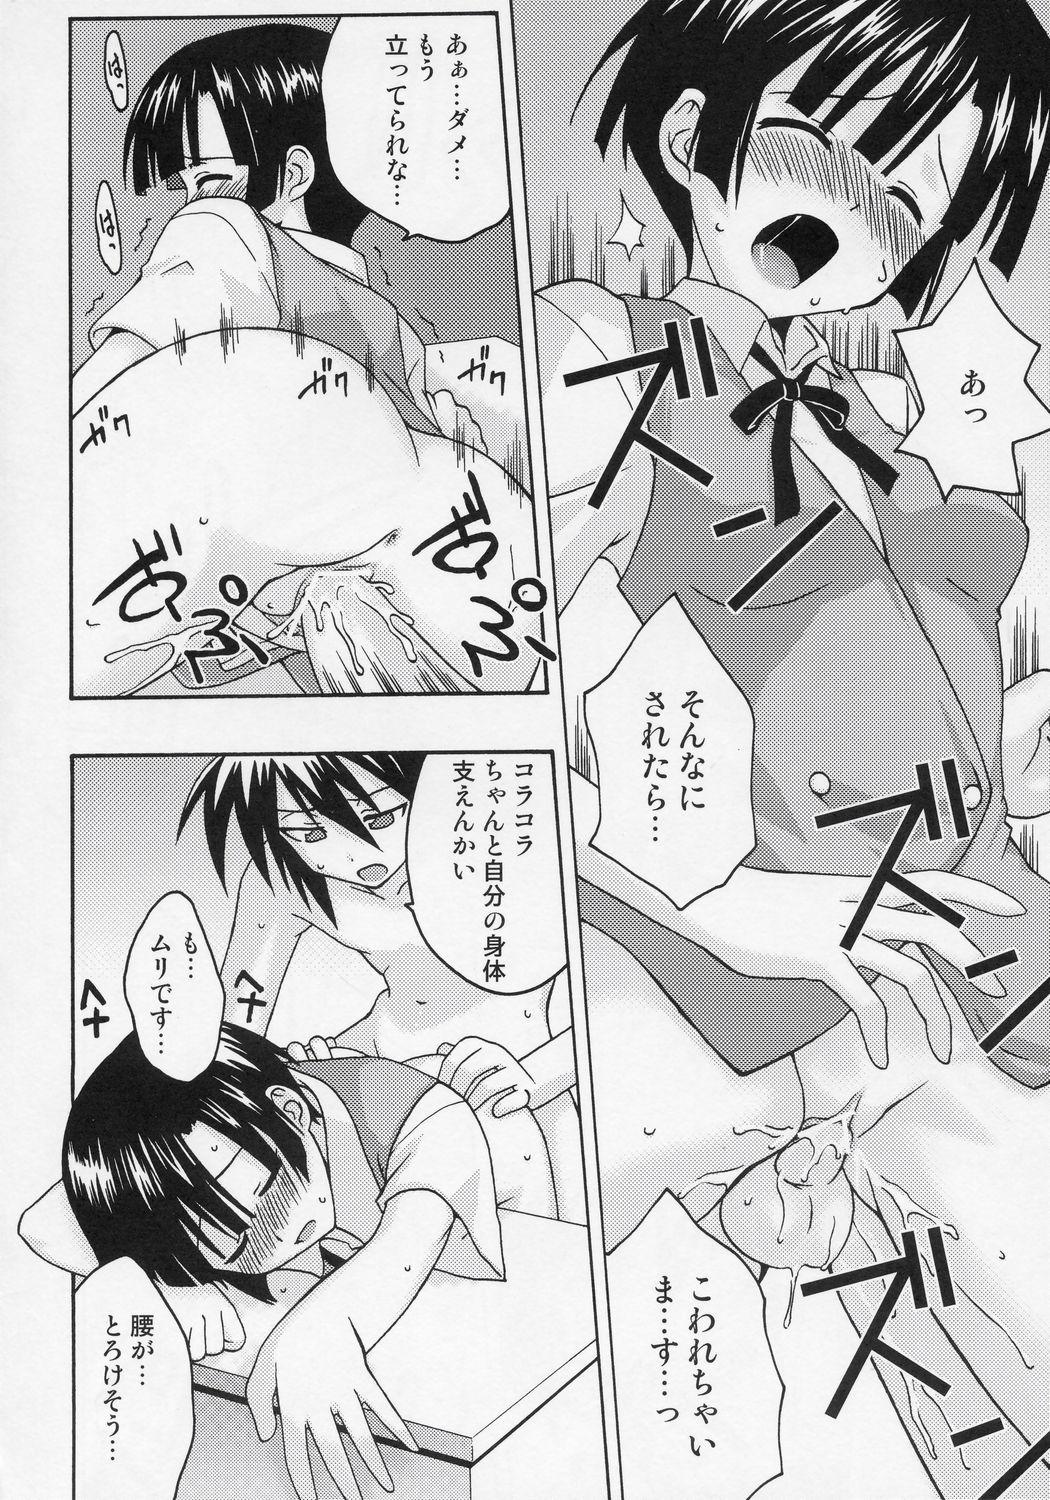 Bisexual Ura Mahou Sensei Jamma! 7 - Mahou sensei negima Tribbing - Page 9